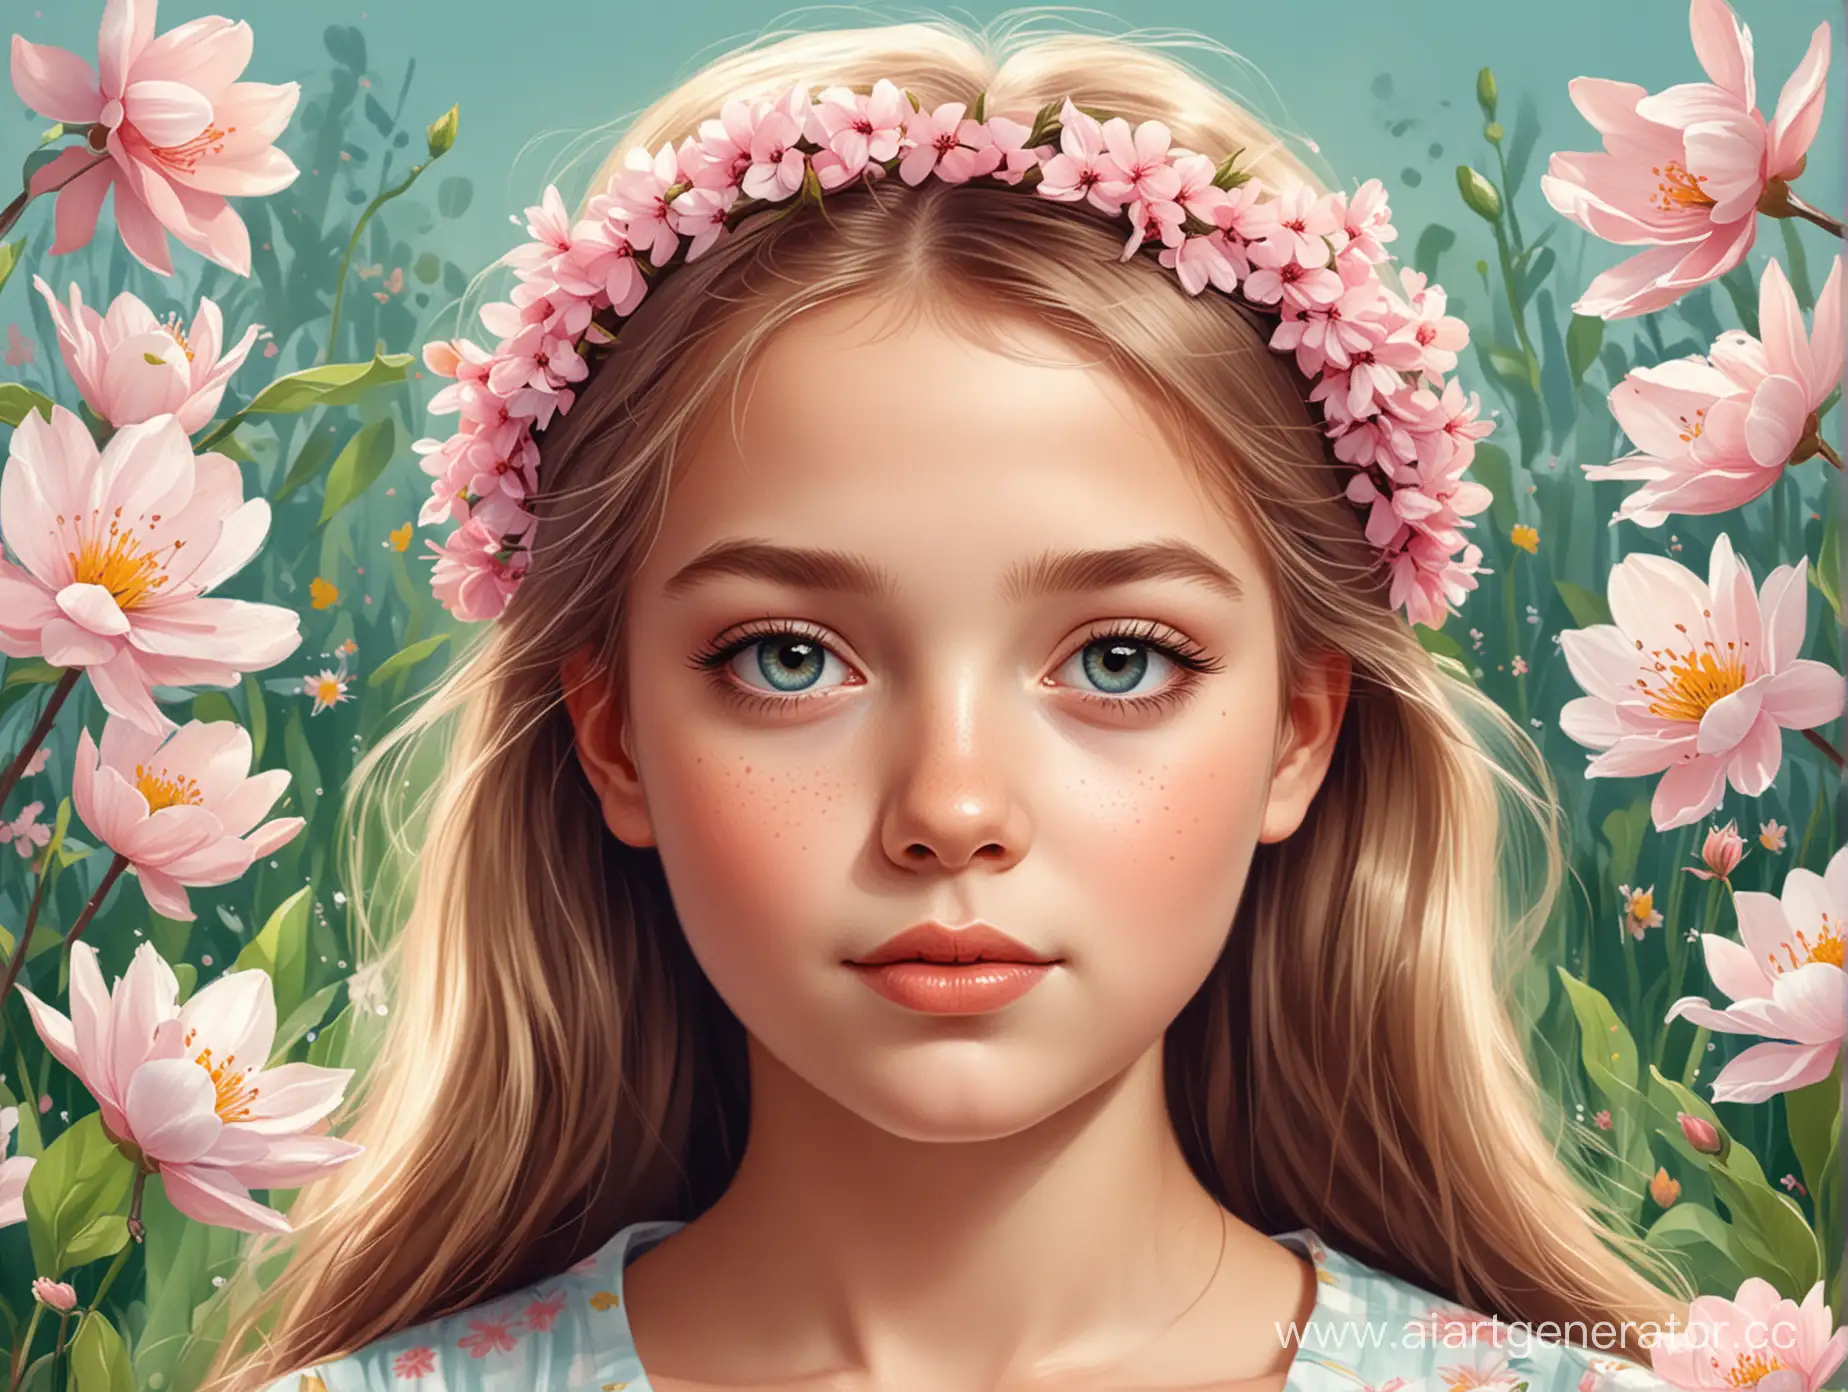 Весенняя digital иллюстрация с портретом девушки
